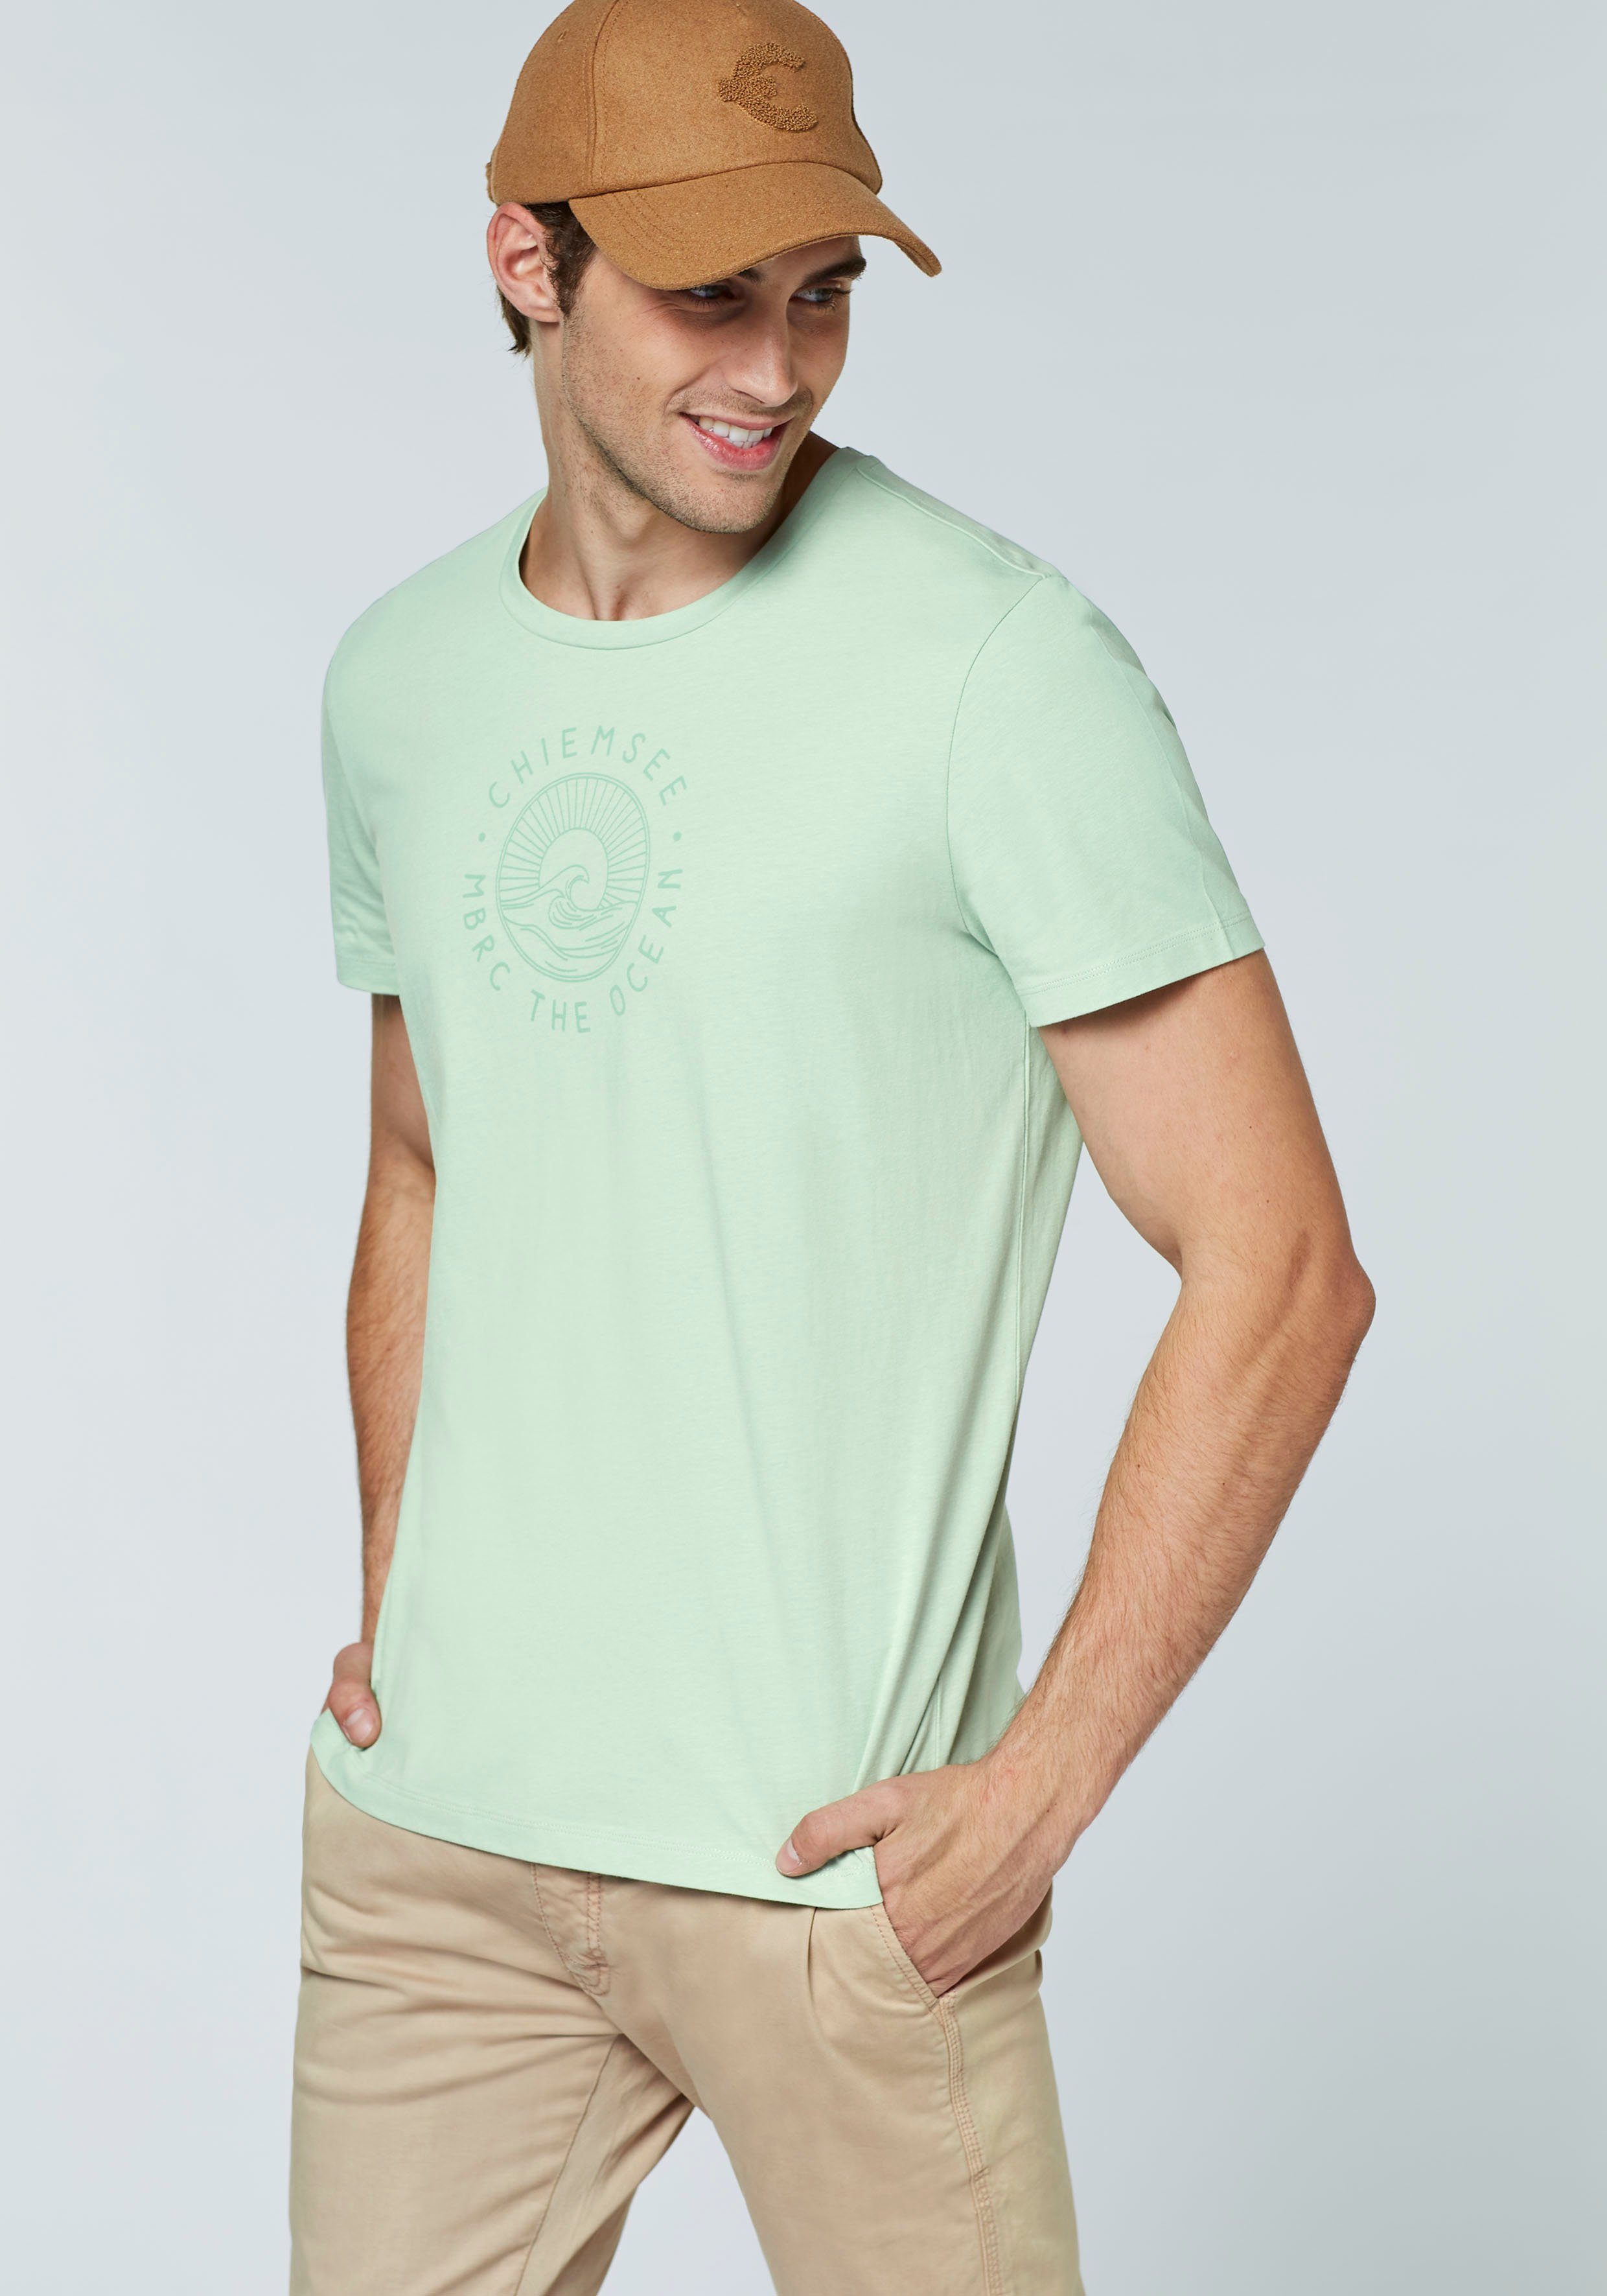 Chiemsee T-Shirt Green Silt